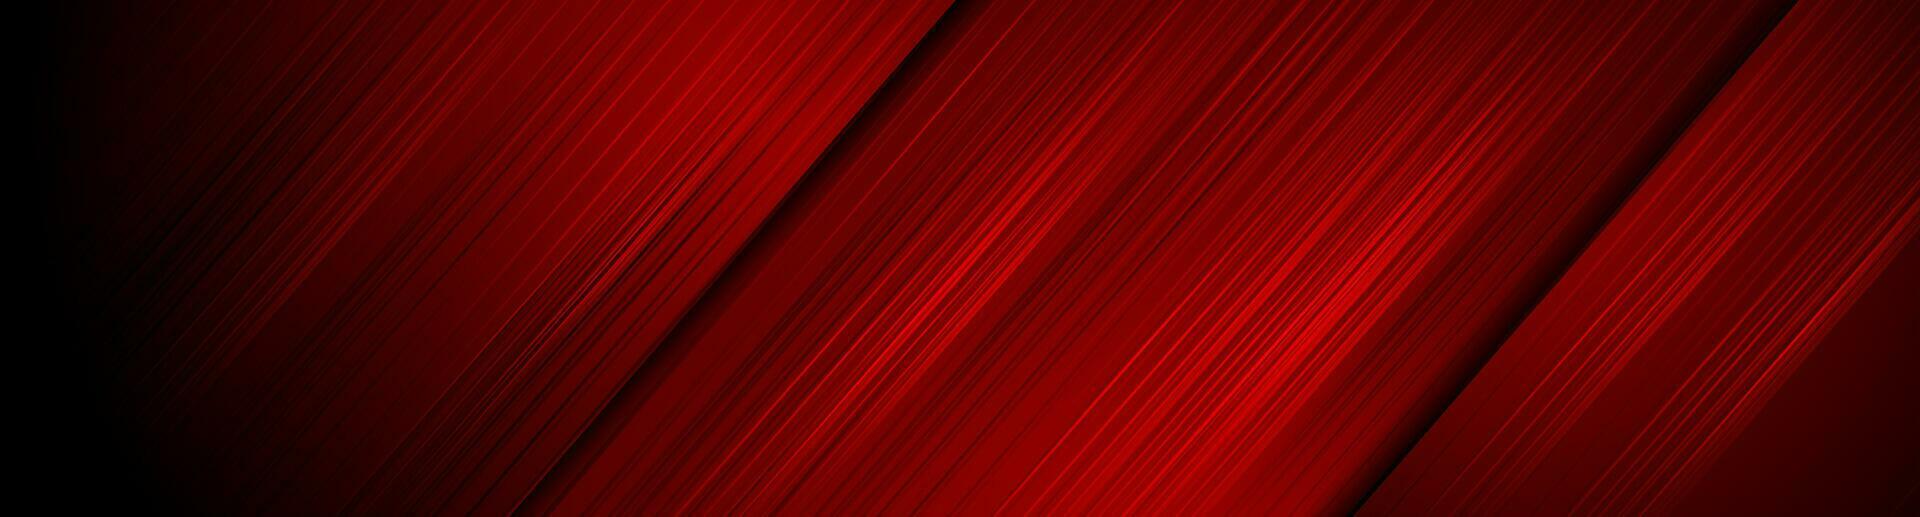 dunkel rot Linien abstrakt Technik futuristisch Hintergrund vektor